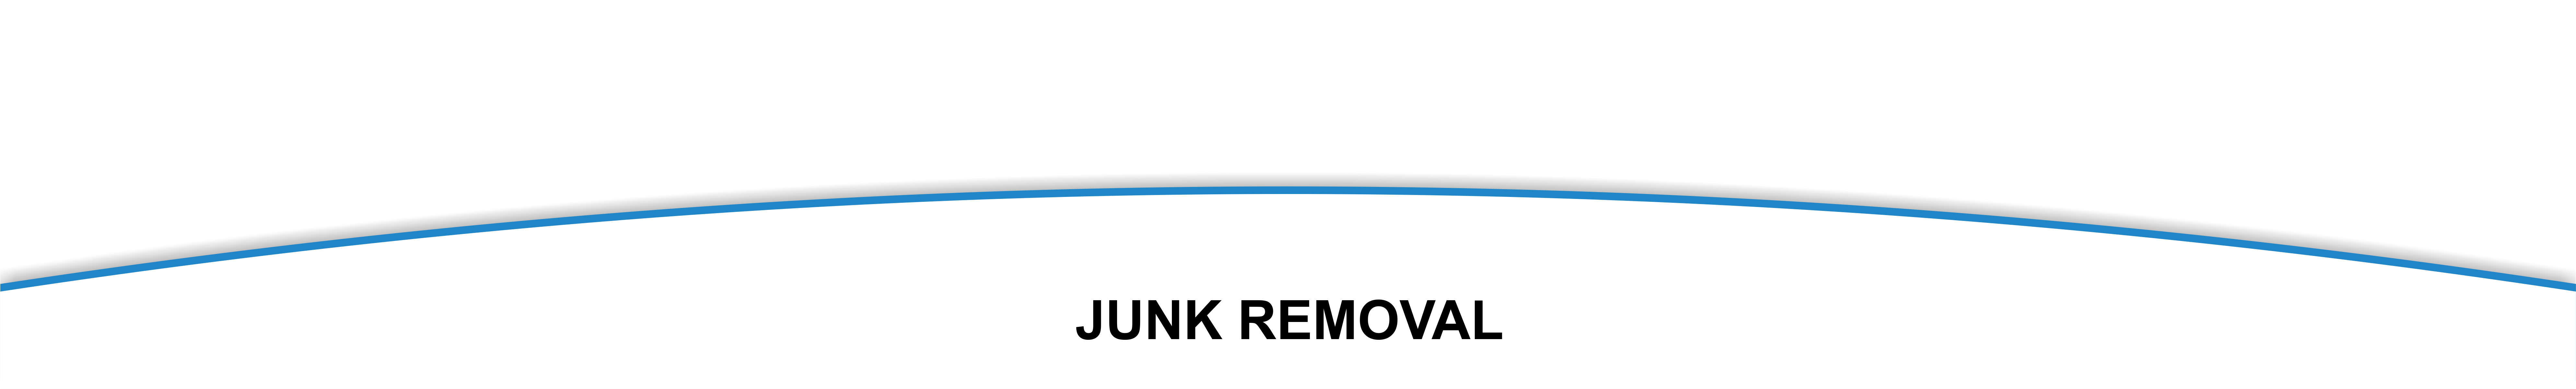 junk_removal_header